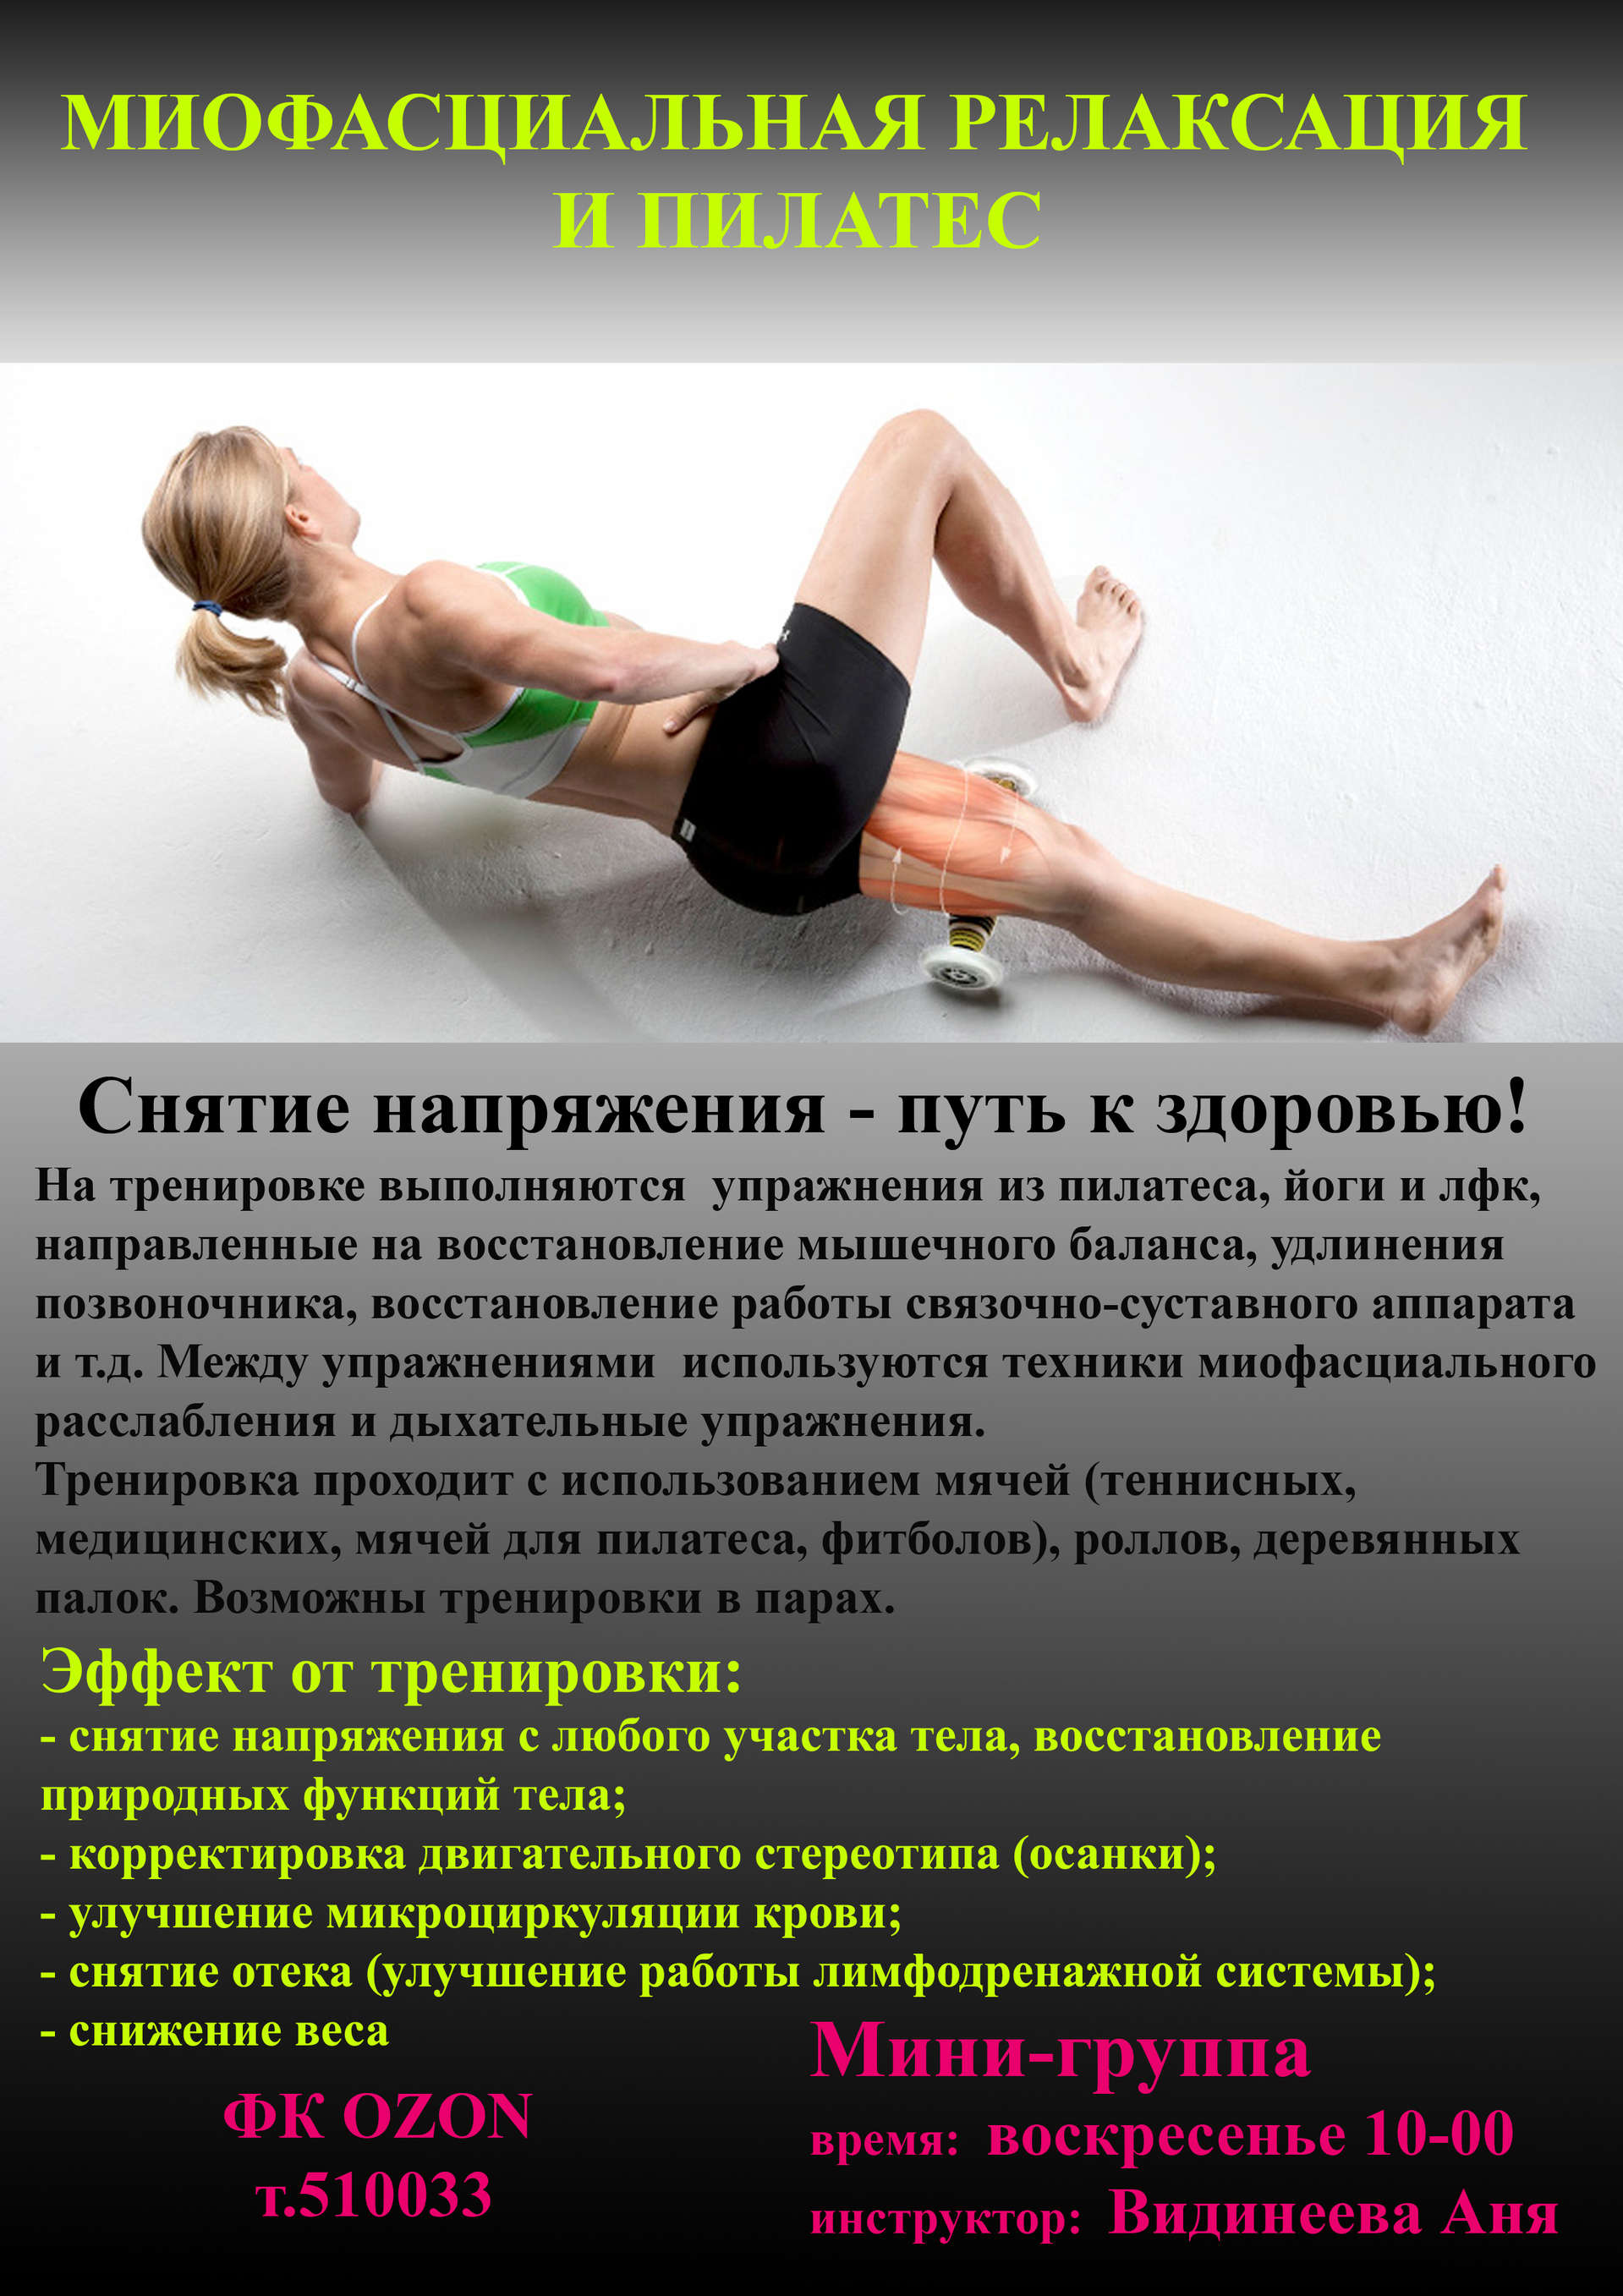 Миофасциальный массаж тела это. Миофасциальная релаксация. Миофасциальный массаж. Миофасциальное расслабление мышц. Миофасциальные упражнения.